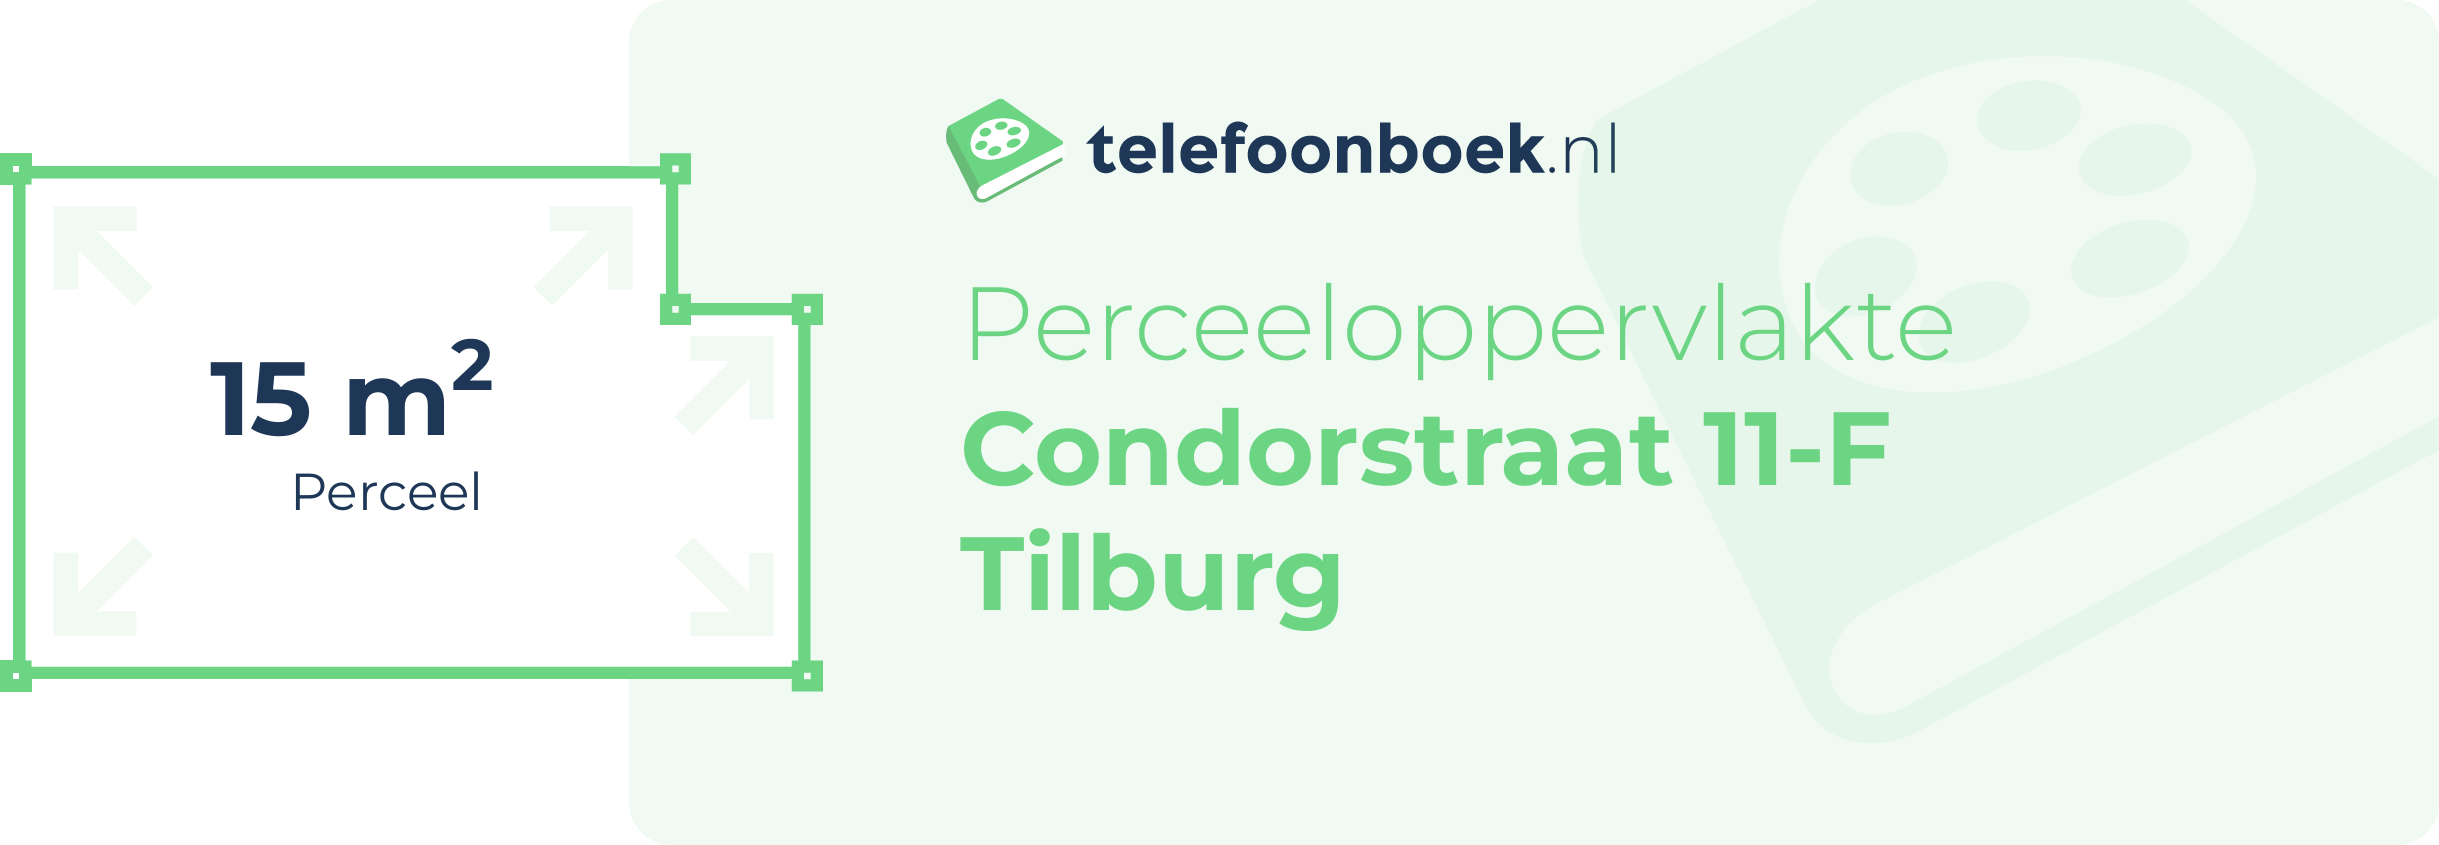 Perceeloppervlakte Condorstraat 11-F Tilburg